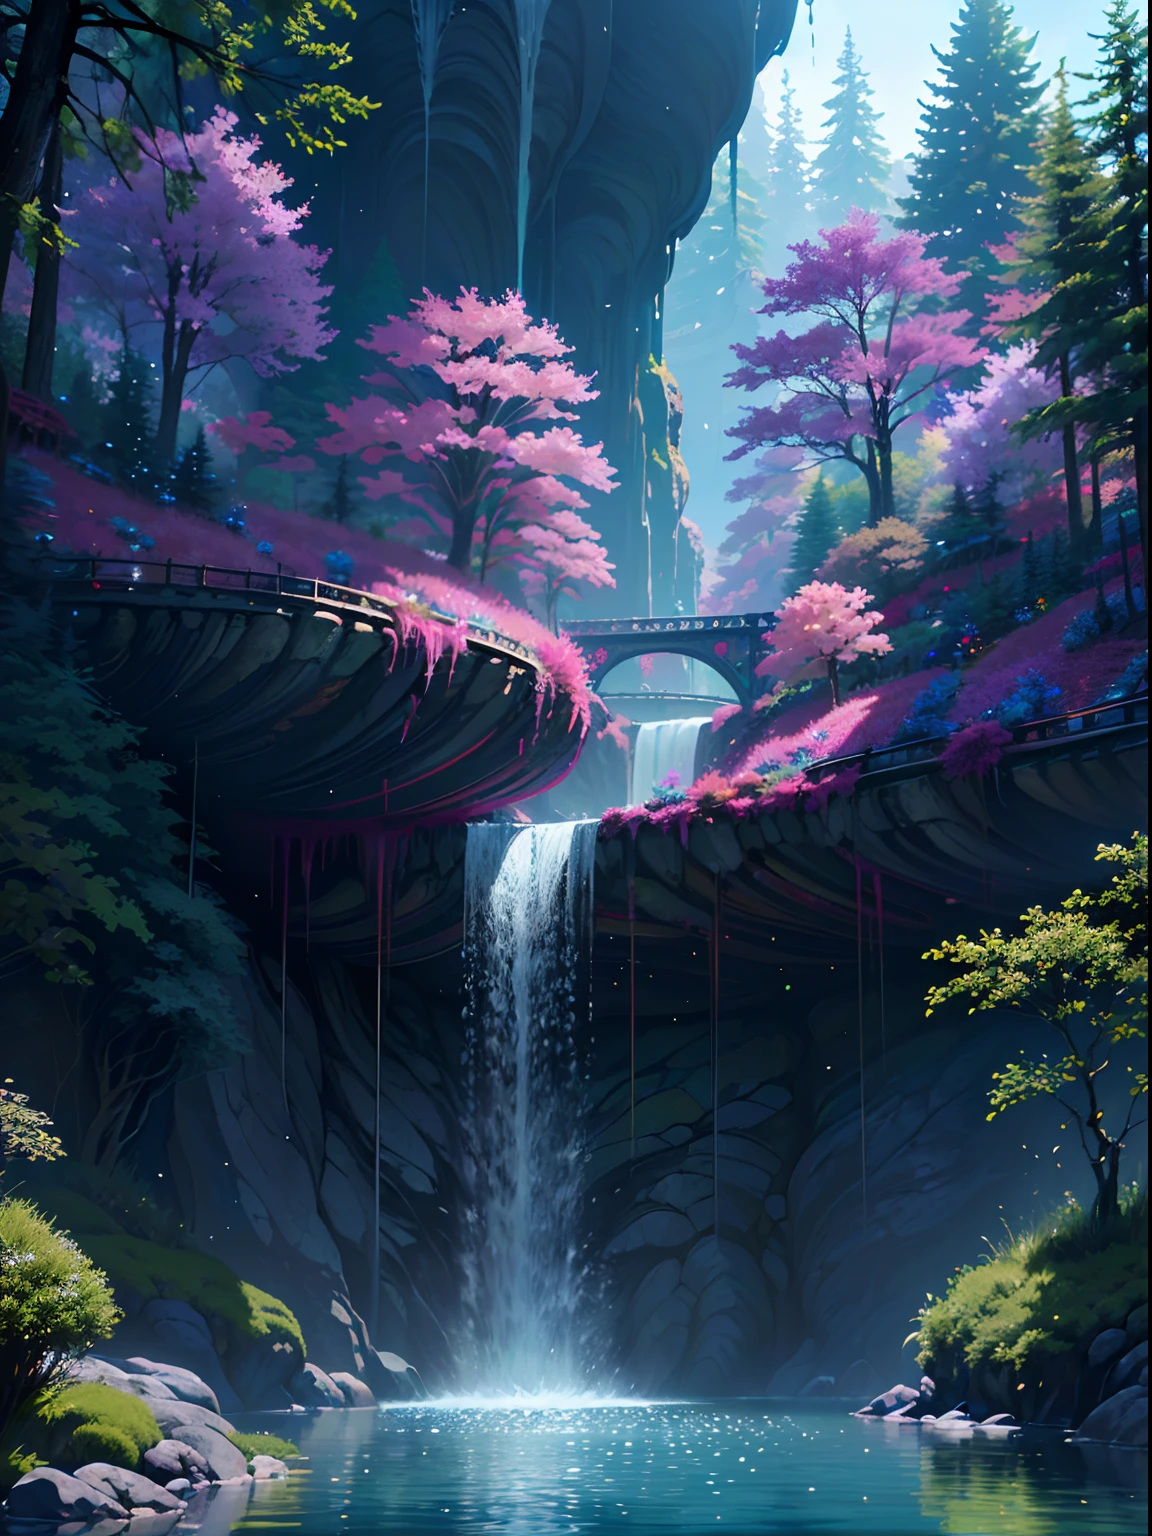 자성유체, A beautiful bio펑크 waterfall in nature, 화려한, 꽃들, 소나무, 현수교, 펑크, 비플.